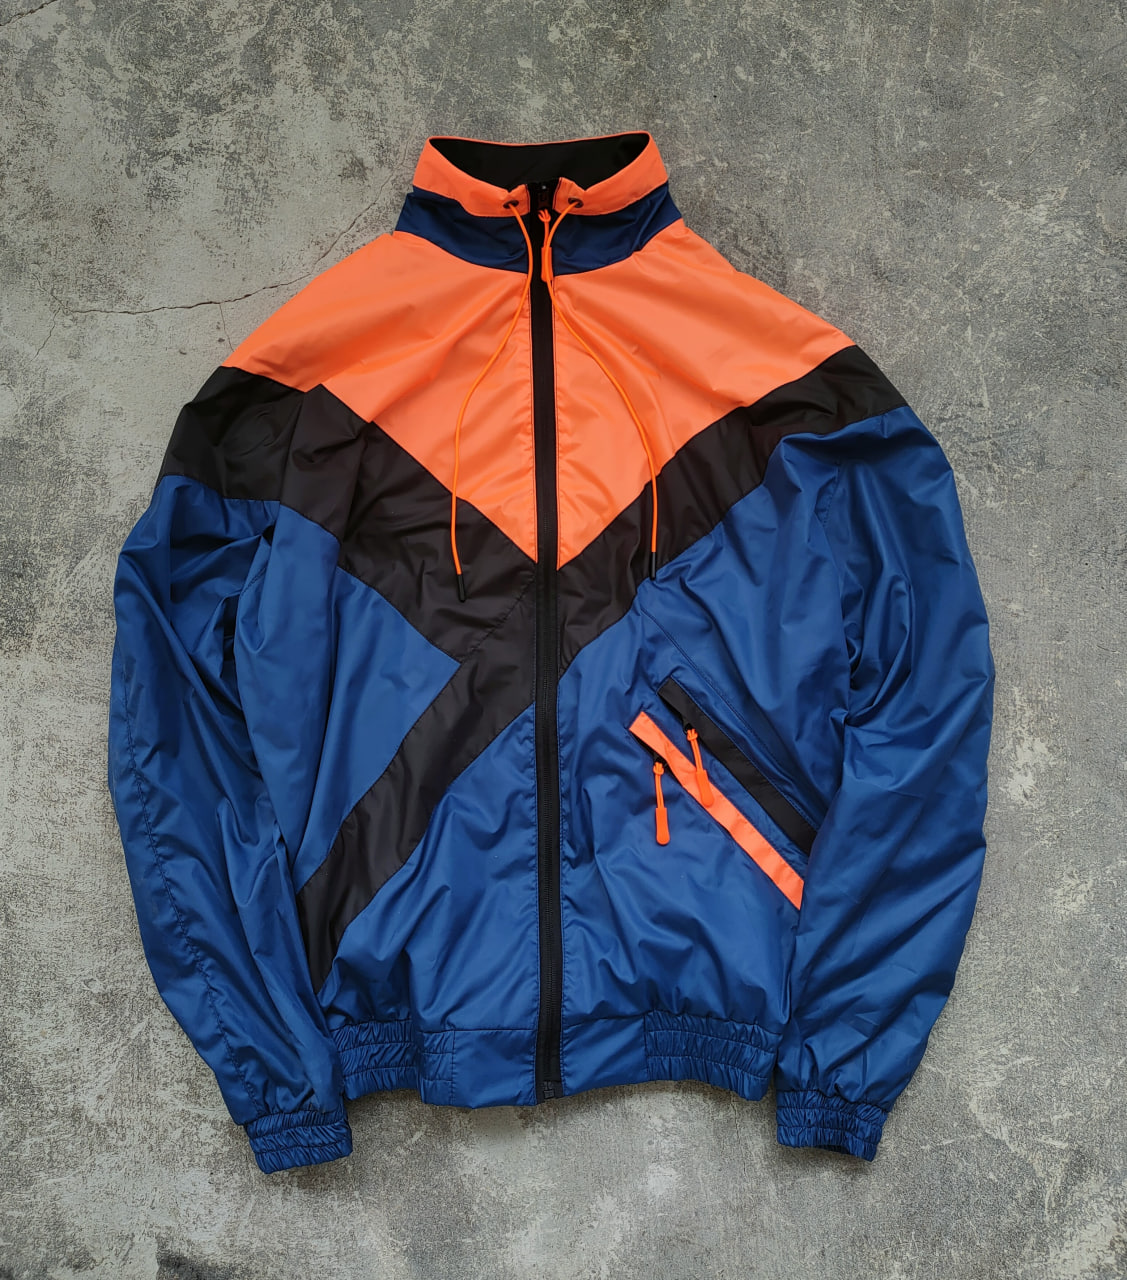 Мужская демисезонная куртка - ветровка Reload Retro 90-6 оранжевый - Фото 2